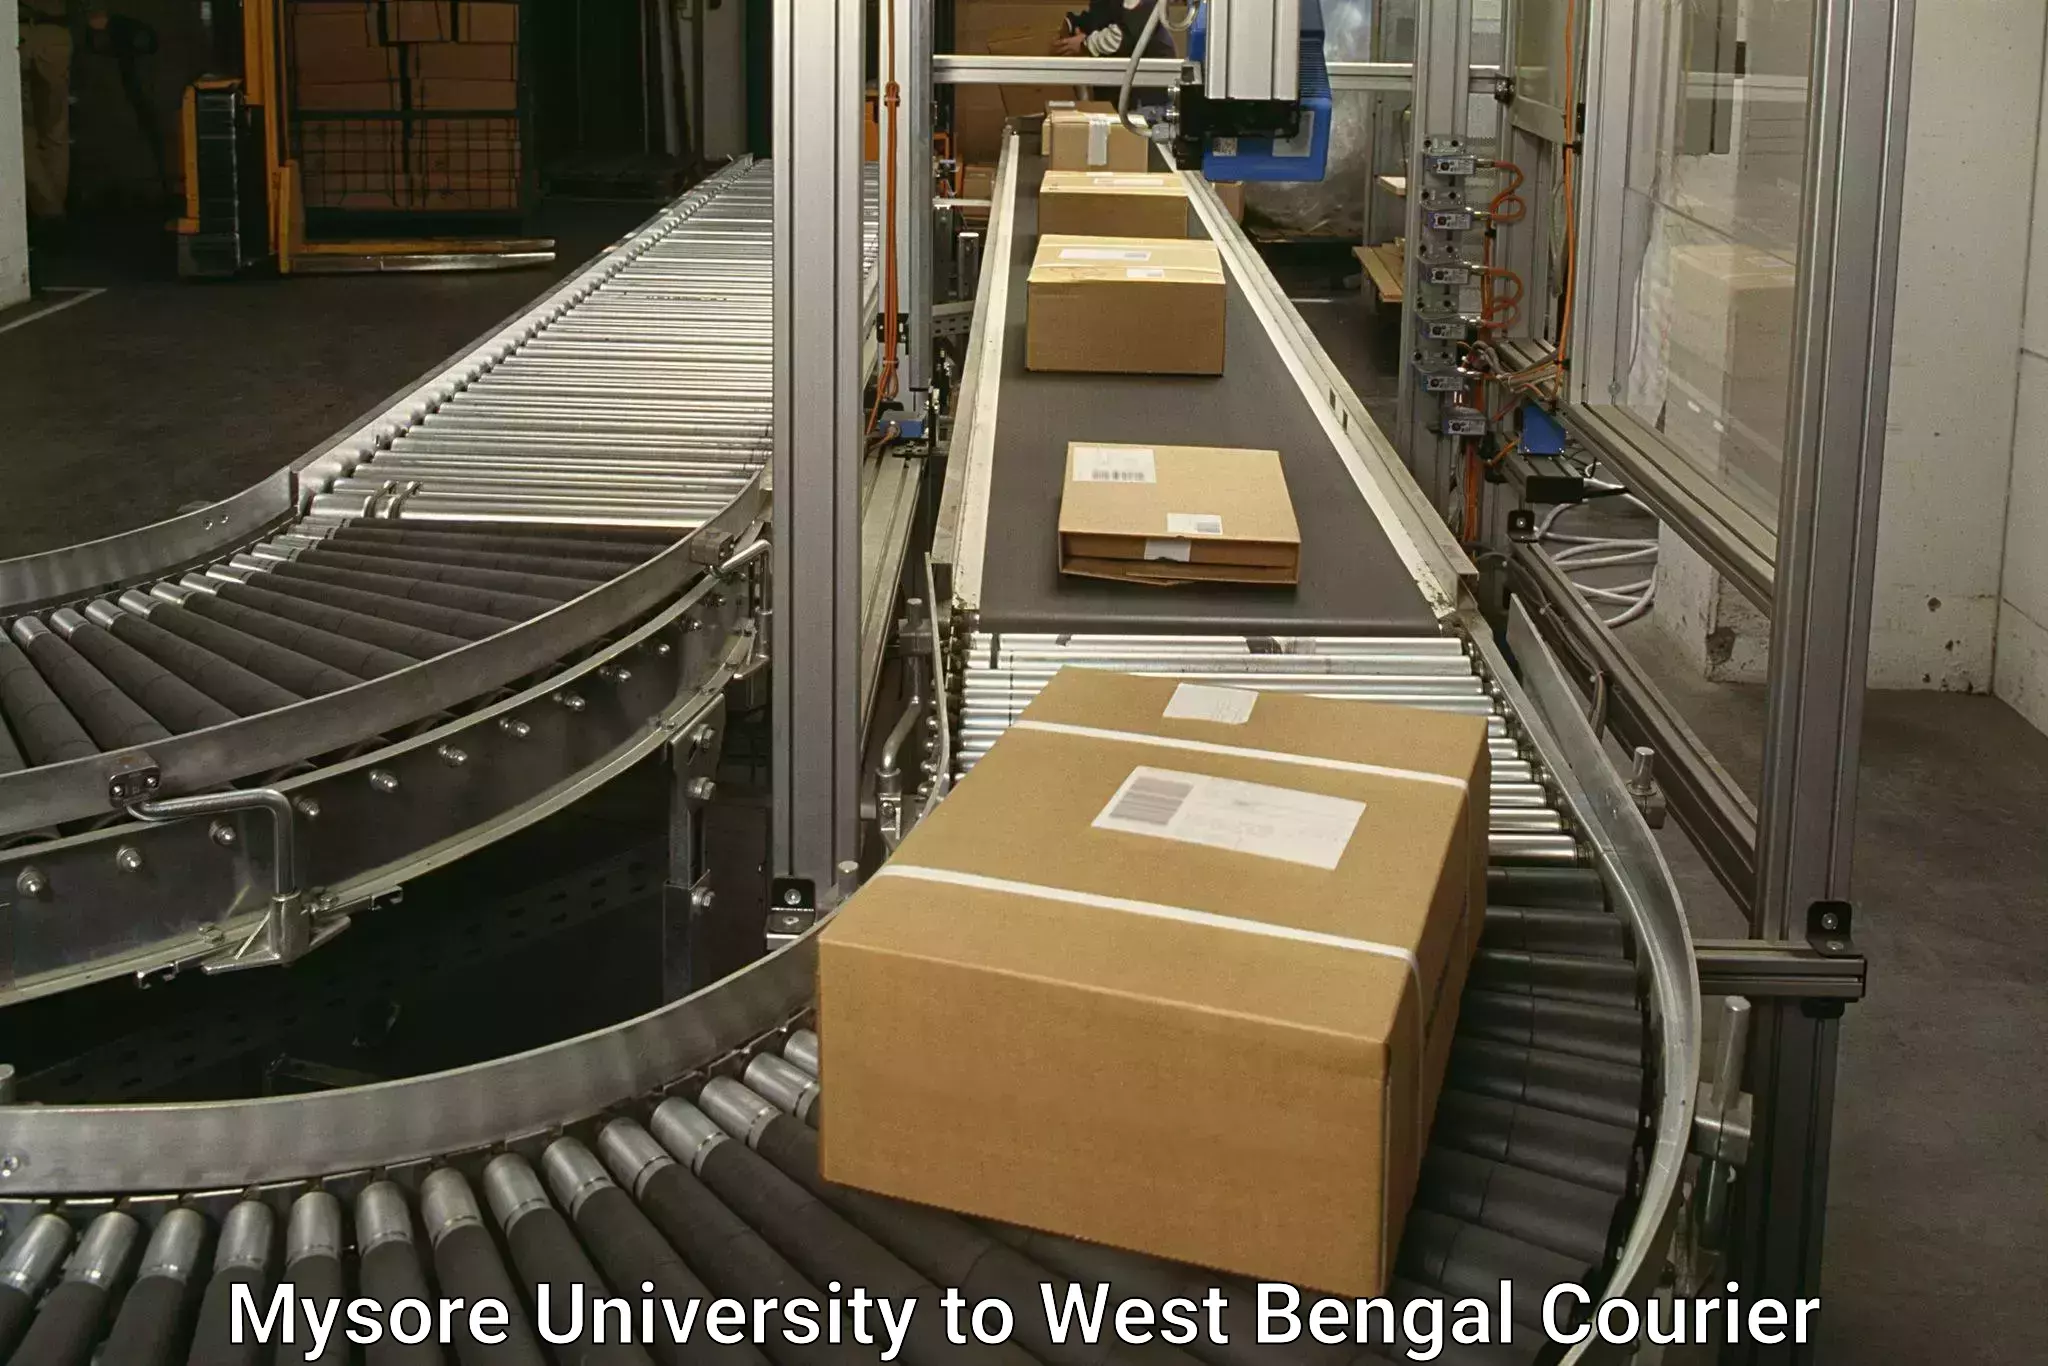 Door-to-door freight service in Mysore University to Kolkata Port